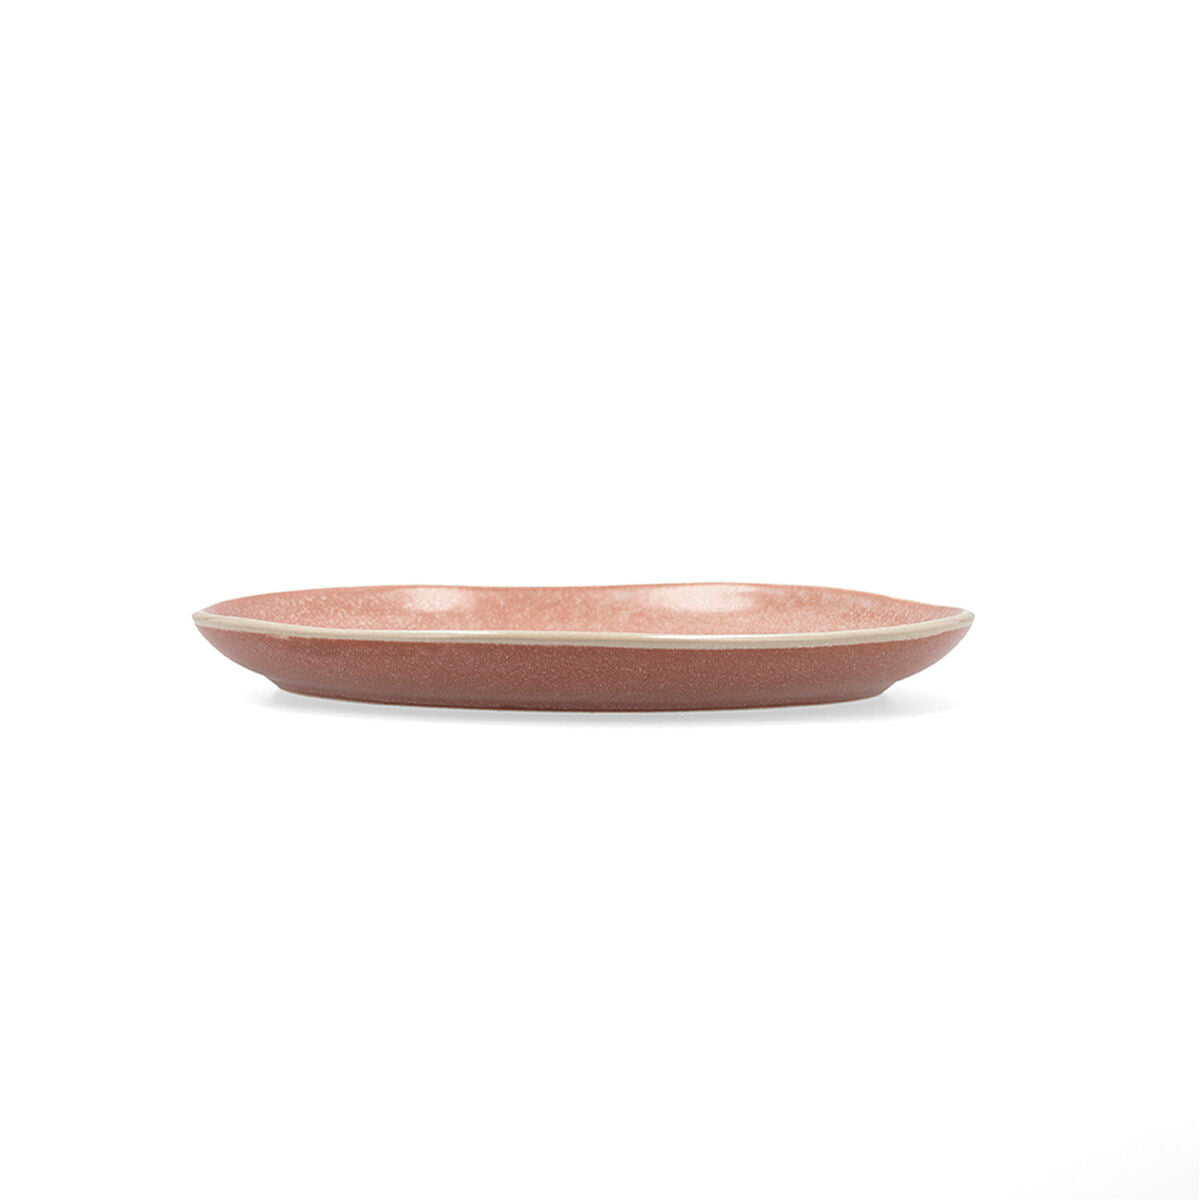 Flacher Teller Bidasoa Gio gelegentlich Braun aus Keramik 20 cm (6 Stück)